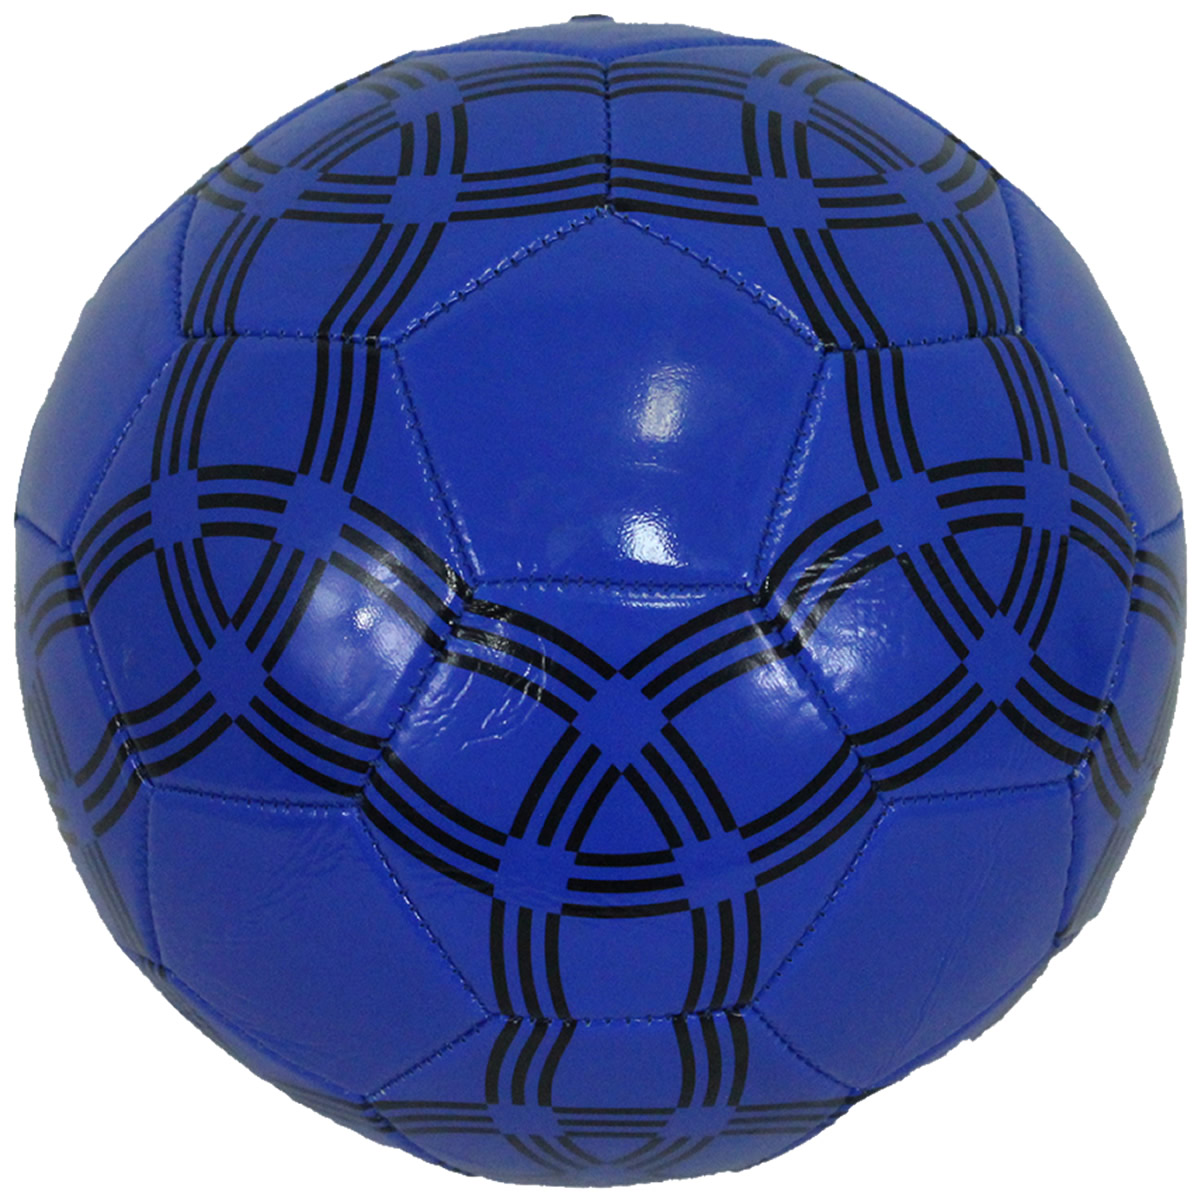 Bola de Futebol de Campo Costurada Tamanho Oficial Amigold - Loja do Competidor